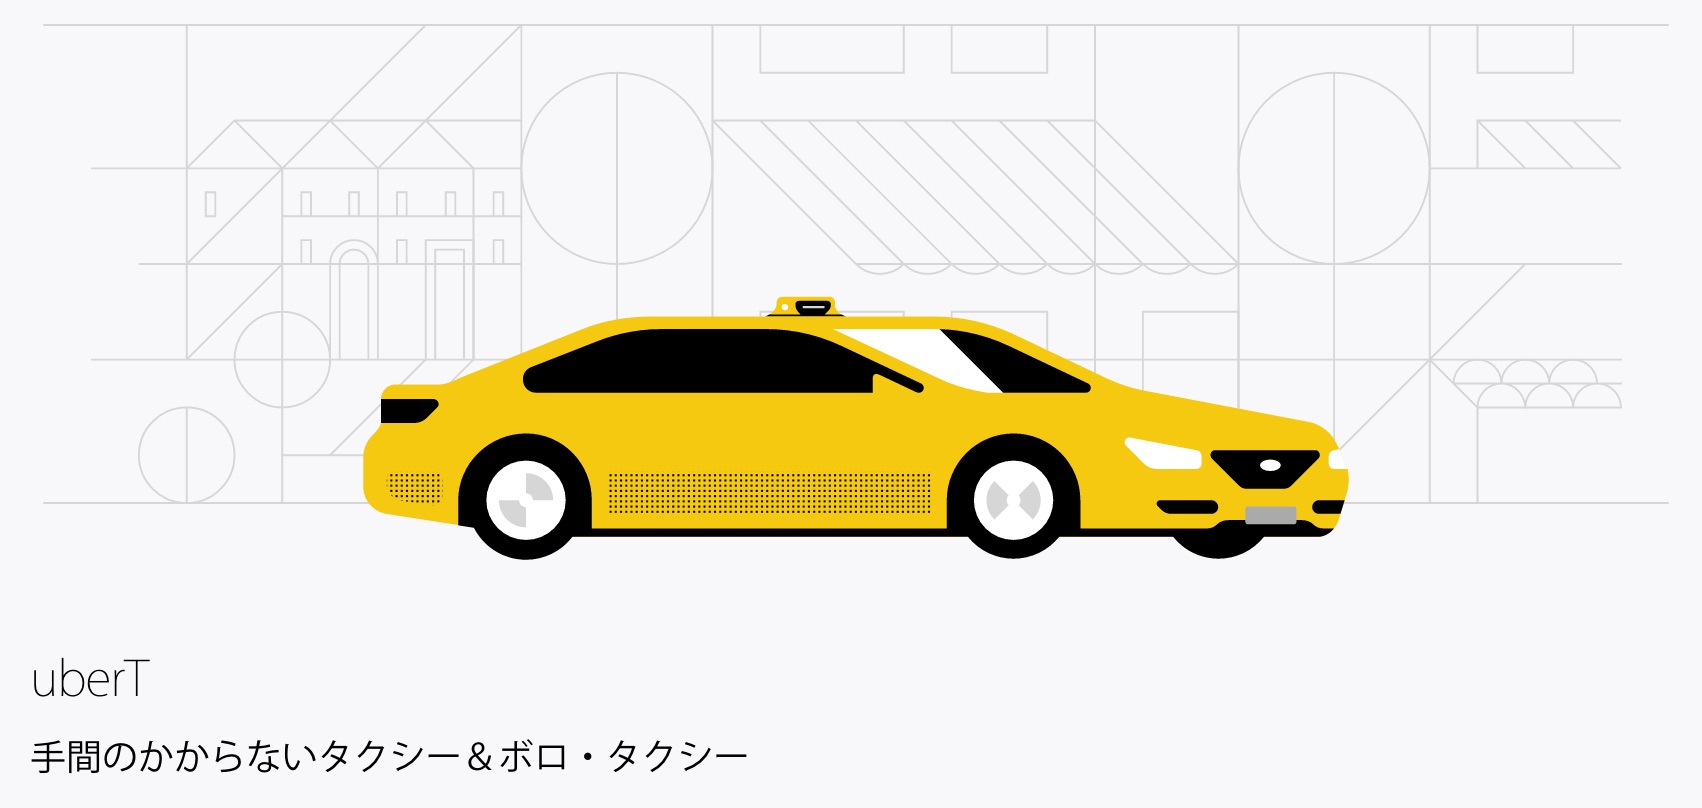 Uber タクシー それとも Uber ドライバーとして または乗客としてニューヨークで Uber を活用しましょう